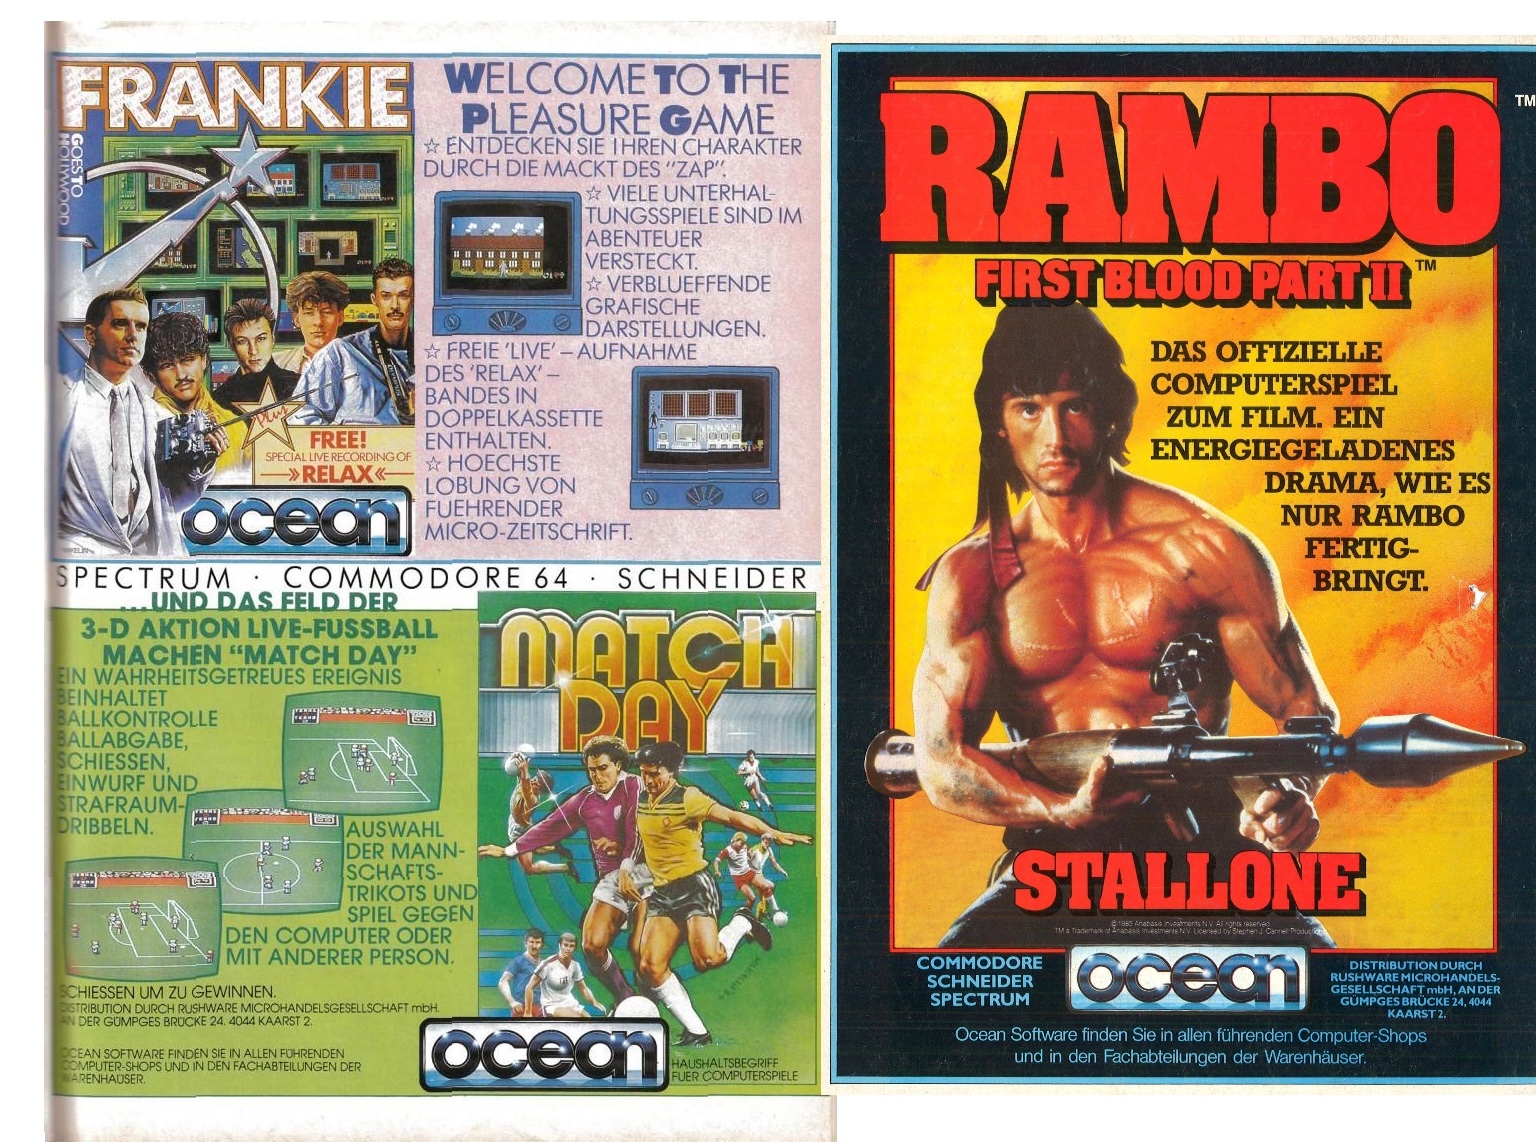 Ocean Software dominiert mit Roger Deans Airbrush-Logo von Beginn an die eigenen Spieleanzeigen, reduziert Frankie, Match Day und Rambo beinahe zu Fußnoten. Quelle: cpcrulez.fr